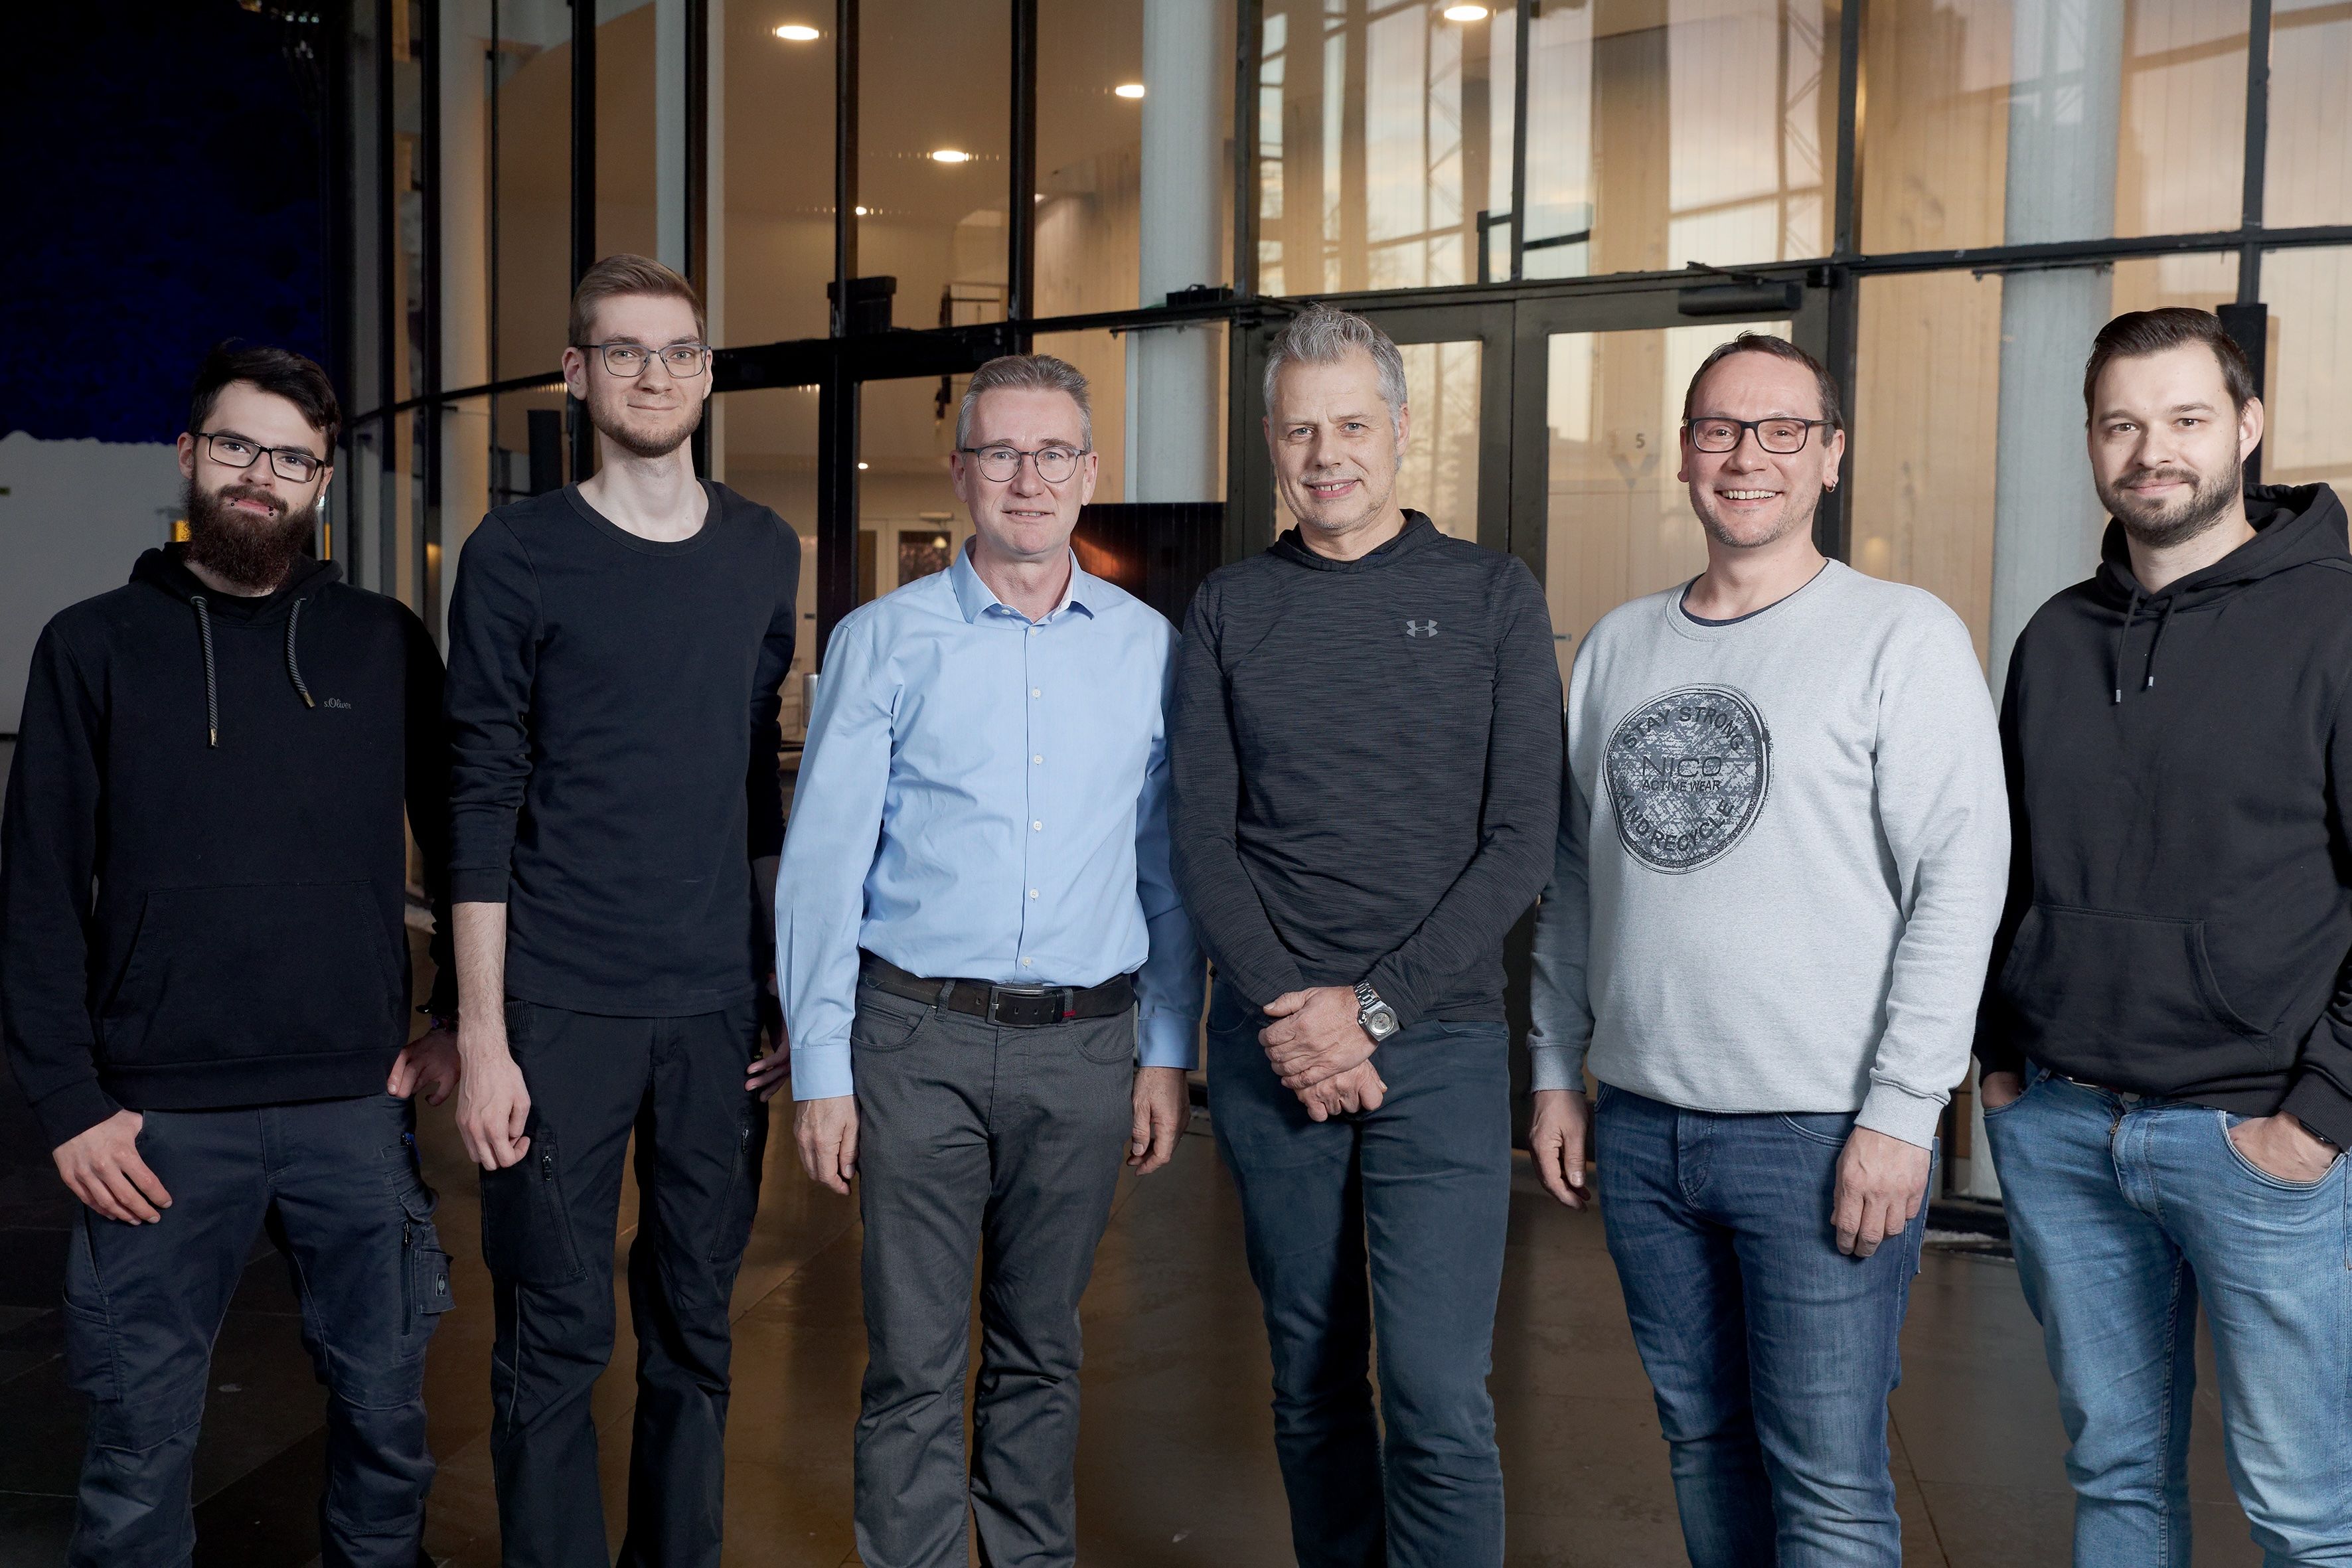 From l. to r.: Max Kallien, Fabian Halseband, Per Witte, Jörg Debbert, Dirk Lansing, Jan Wittkowski